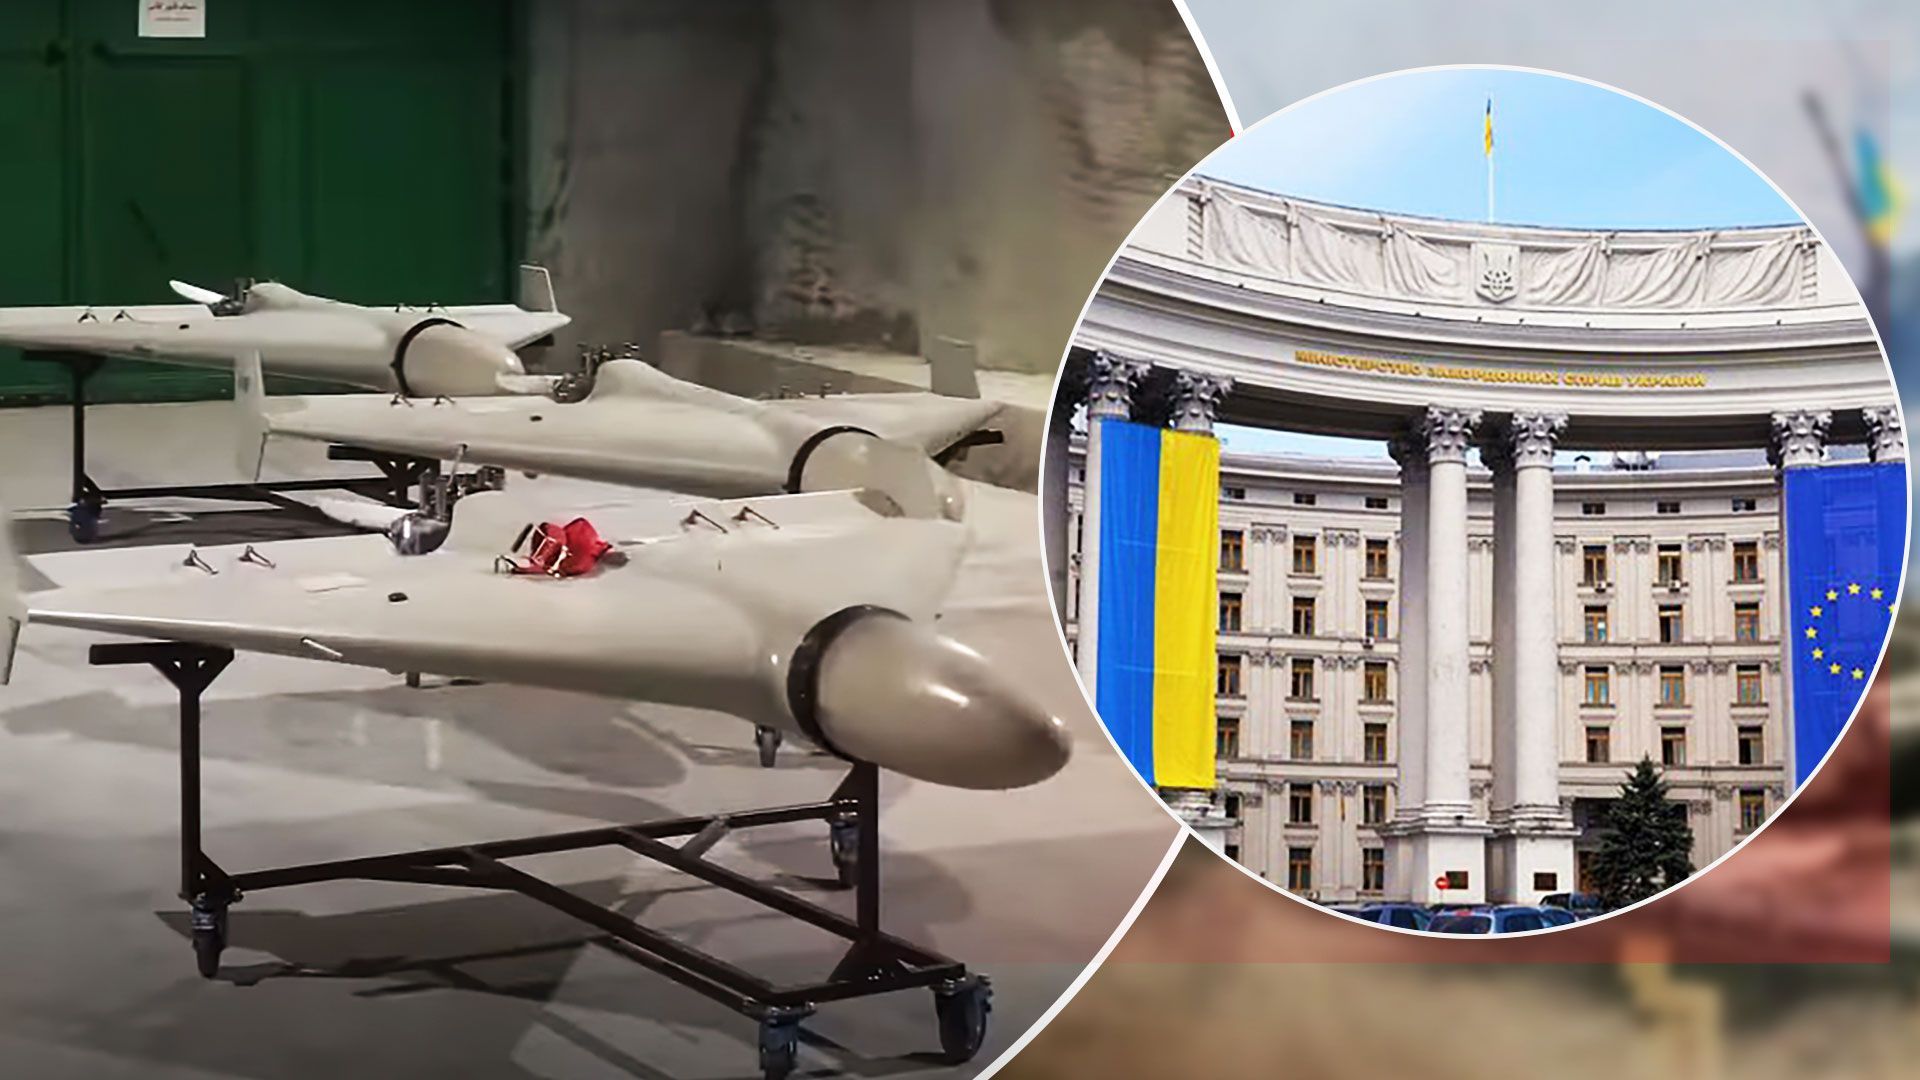 У МЗС відреагували на заяву Китаю про атаку дронами-Атака дронами - реакція МЗС на заяву Китаю про те, що вони нічого не знали - Новини Києва - 24 Канал